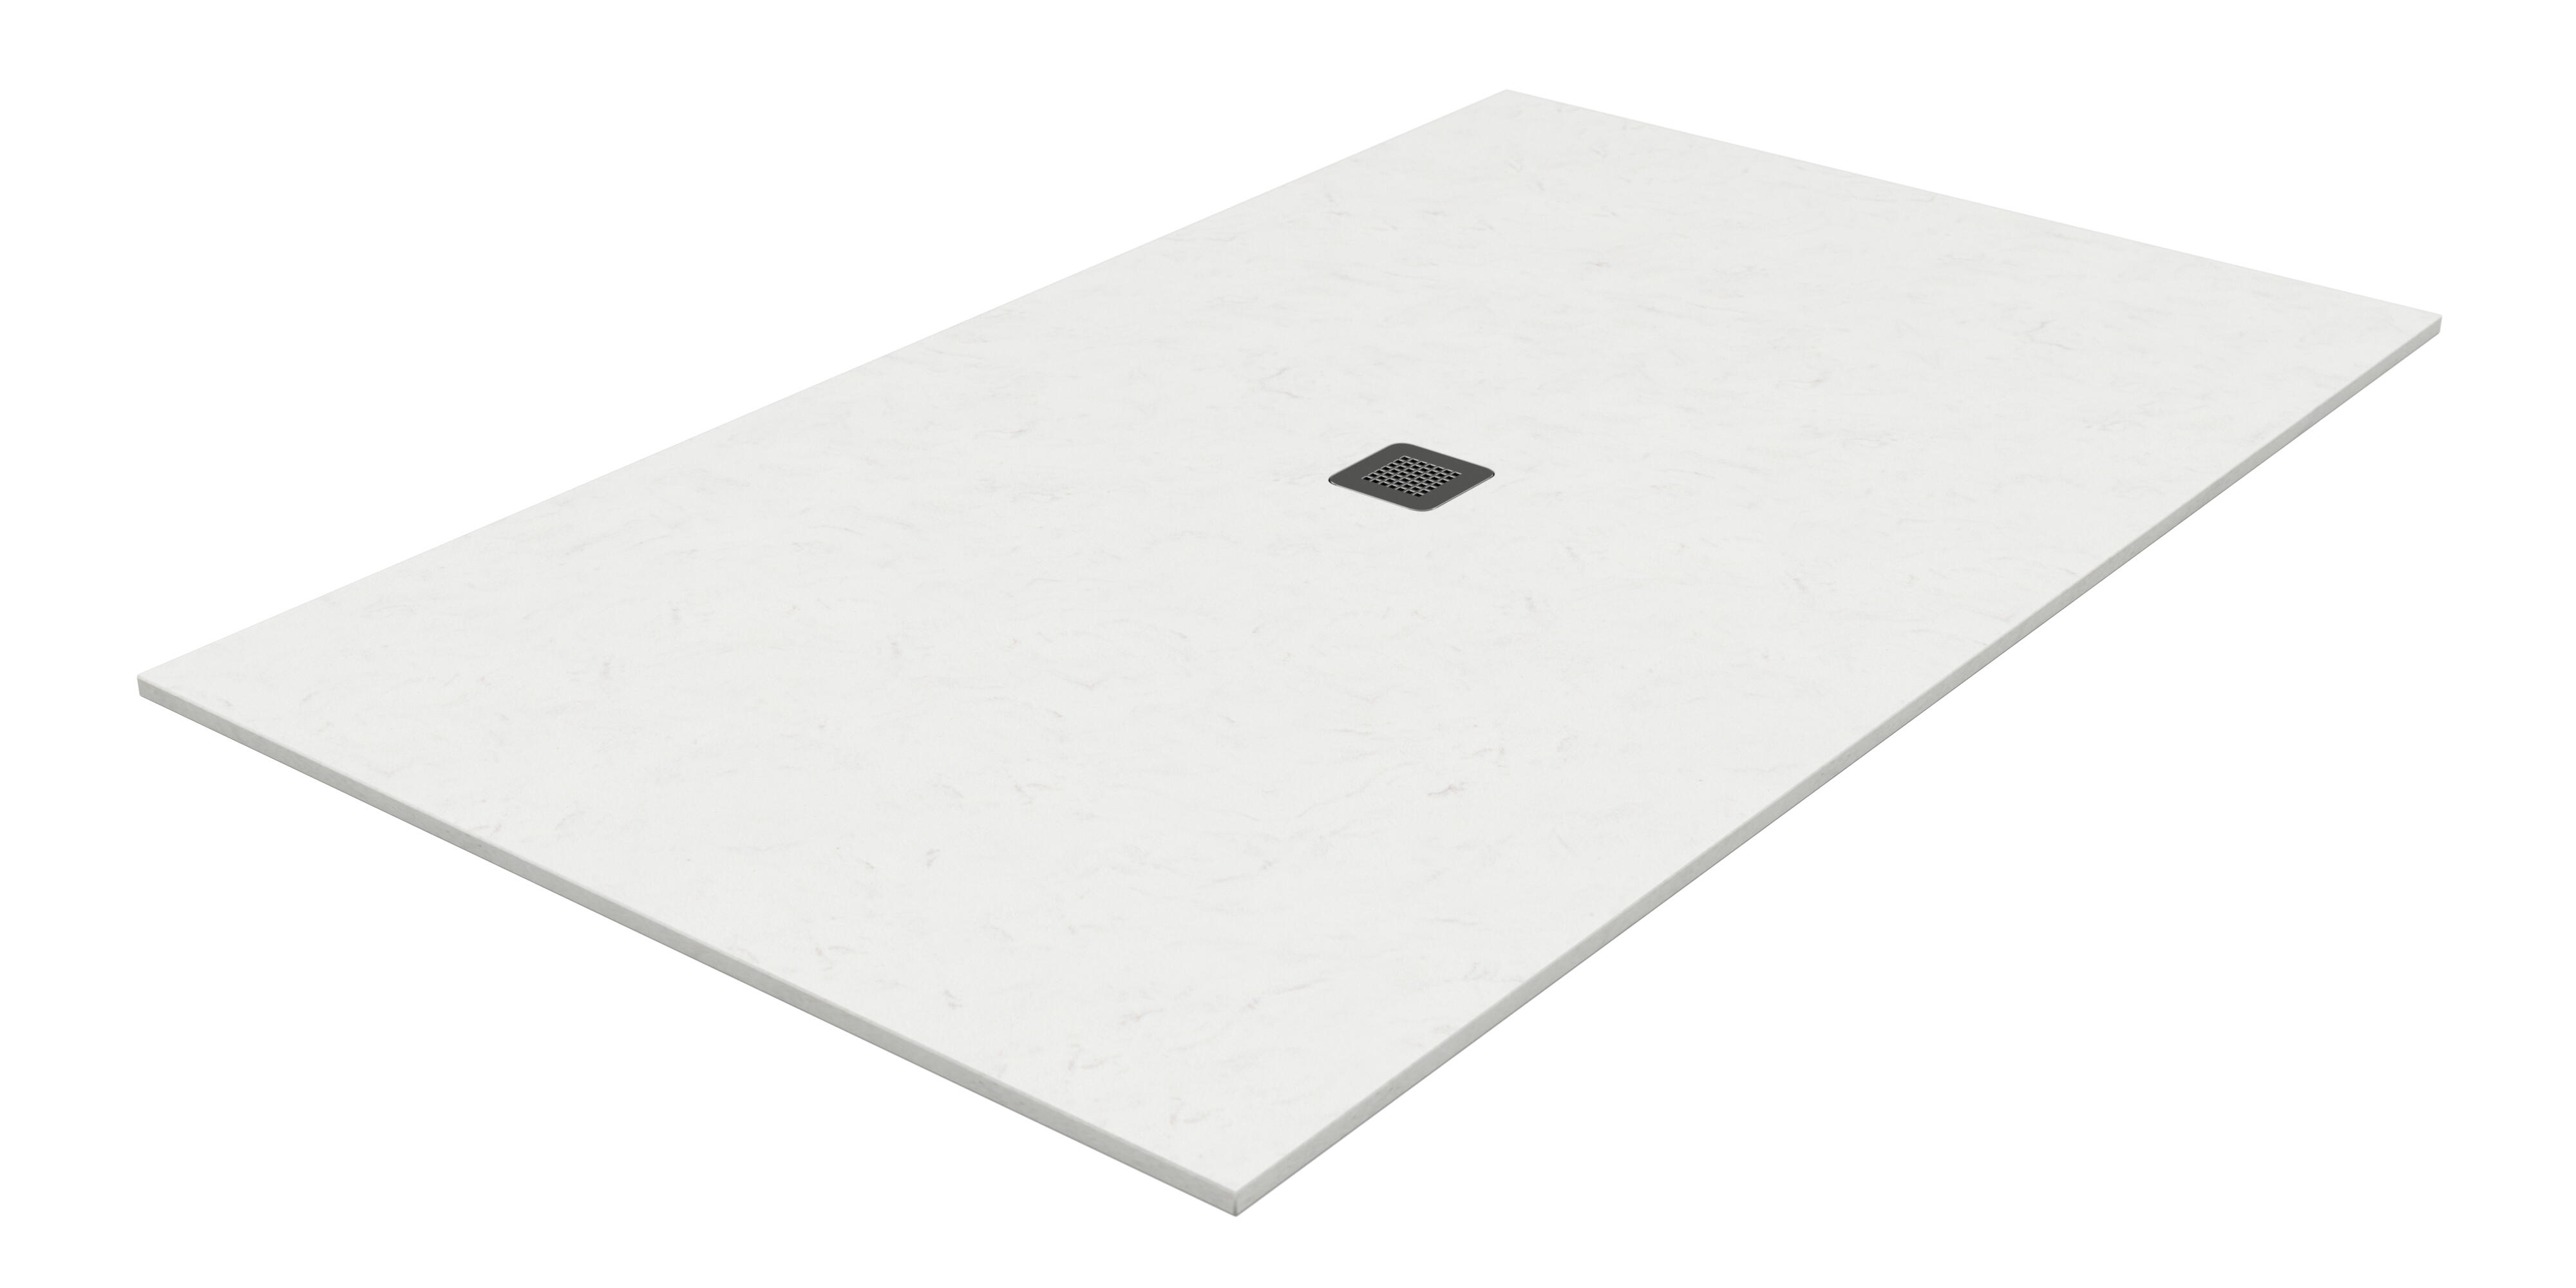 Plato de ducha kioto 170x80 cm blanco